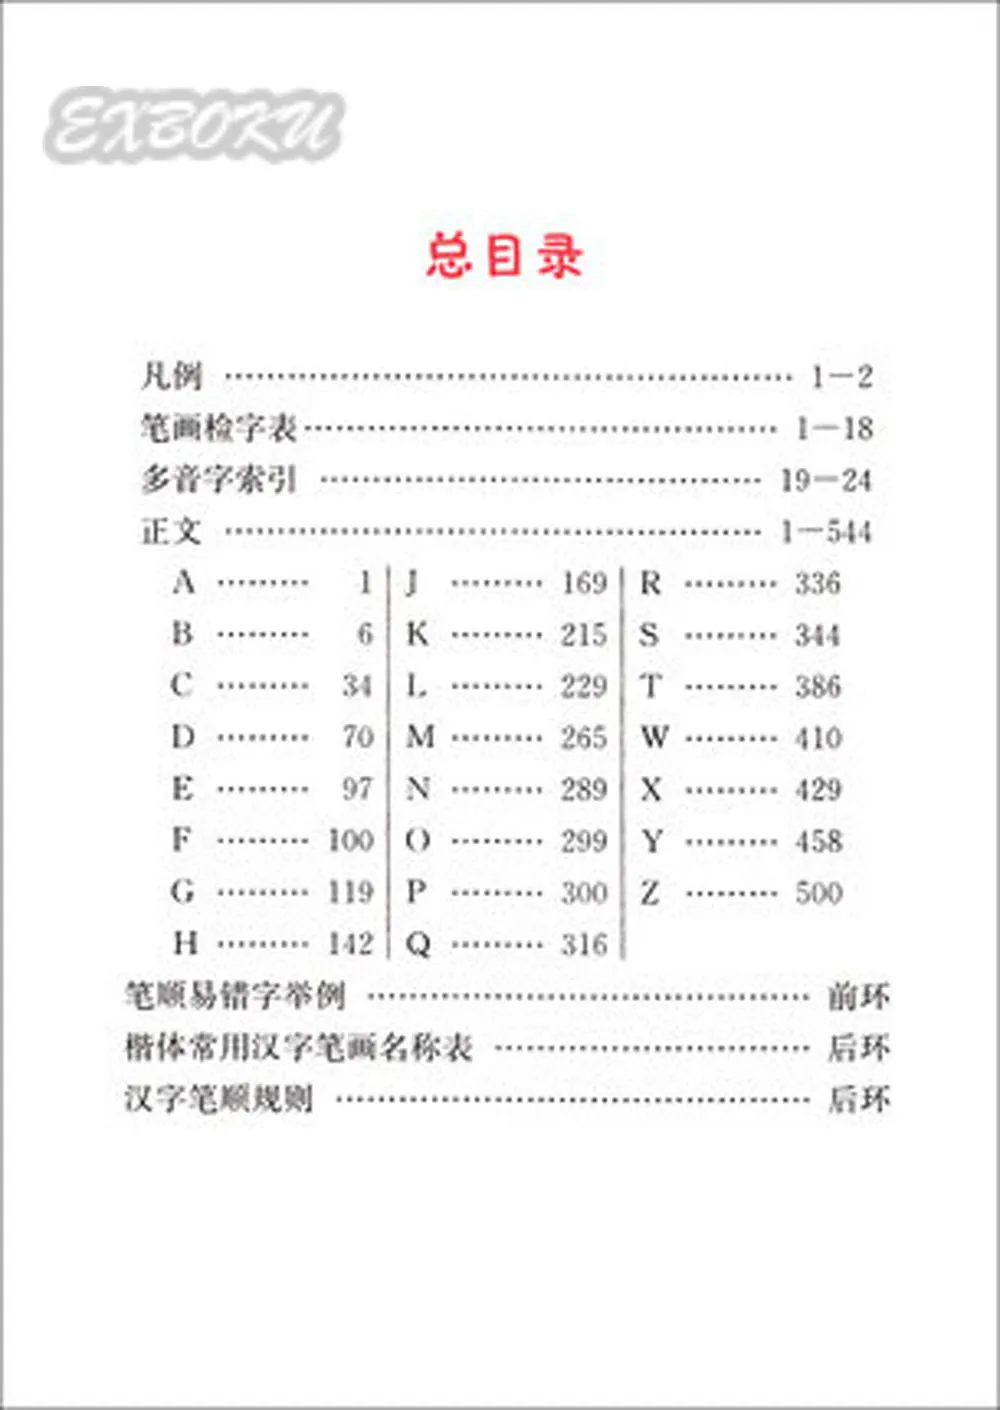 Китайский инсульт-словик с 2500 обычными персонажами для обучения пиньинь изготовление предложения язык обучающий инструмент для резьбы